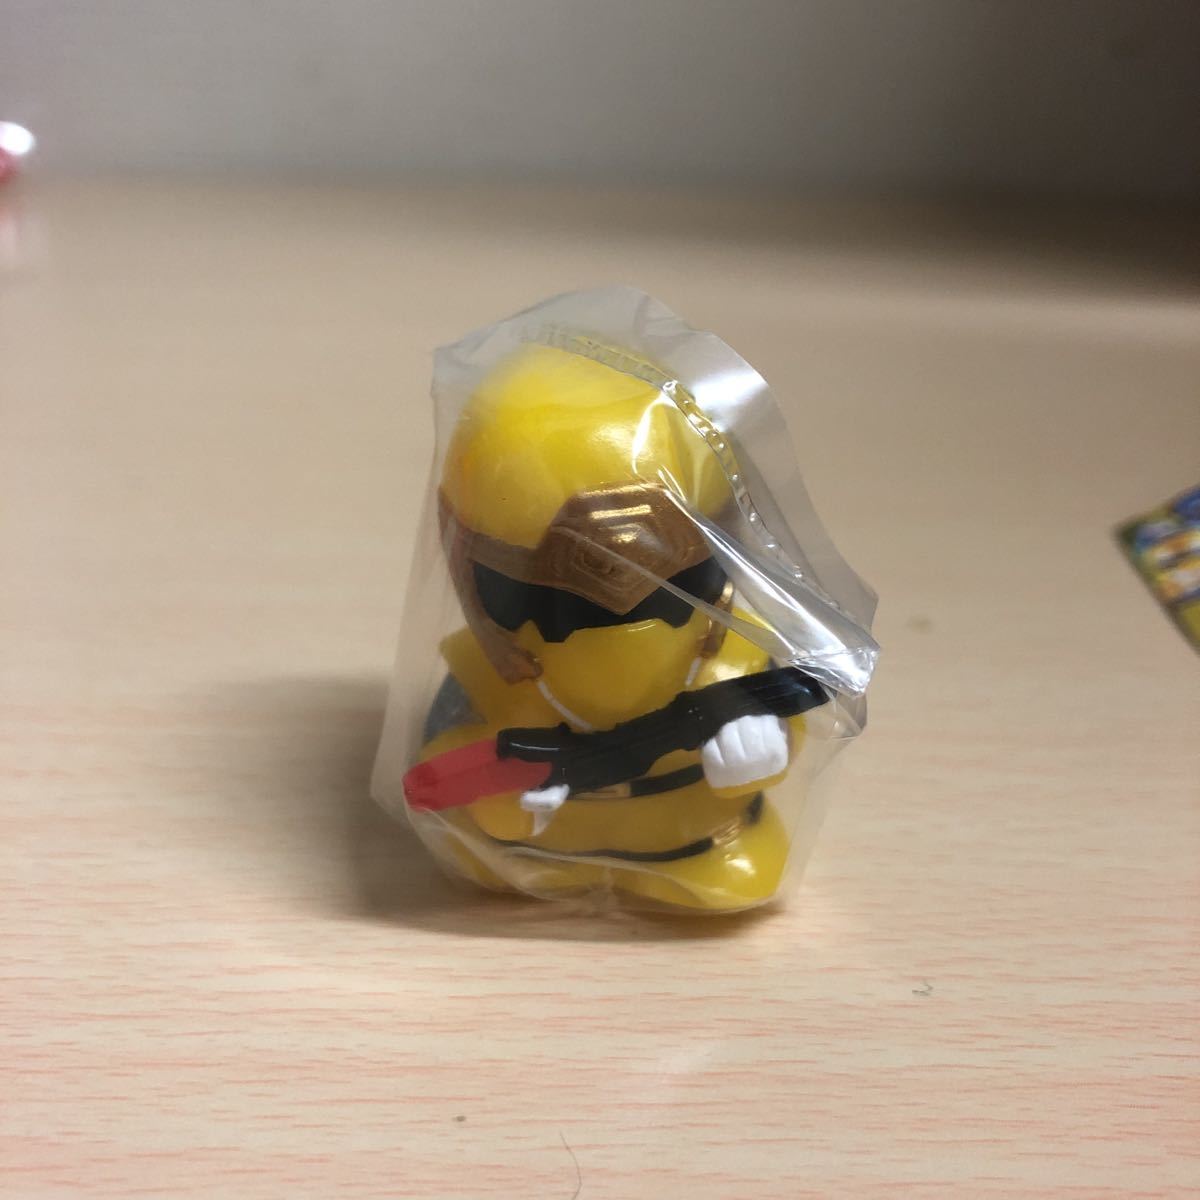  редкий Bandai Ninpu Sentai Hurricanger sofvi коллекция [ - li талон желтый ] не использовался 2002 год в это время товар 